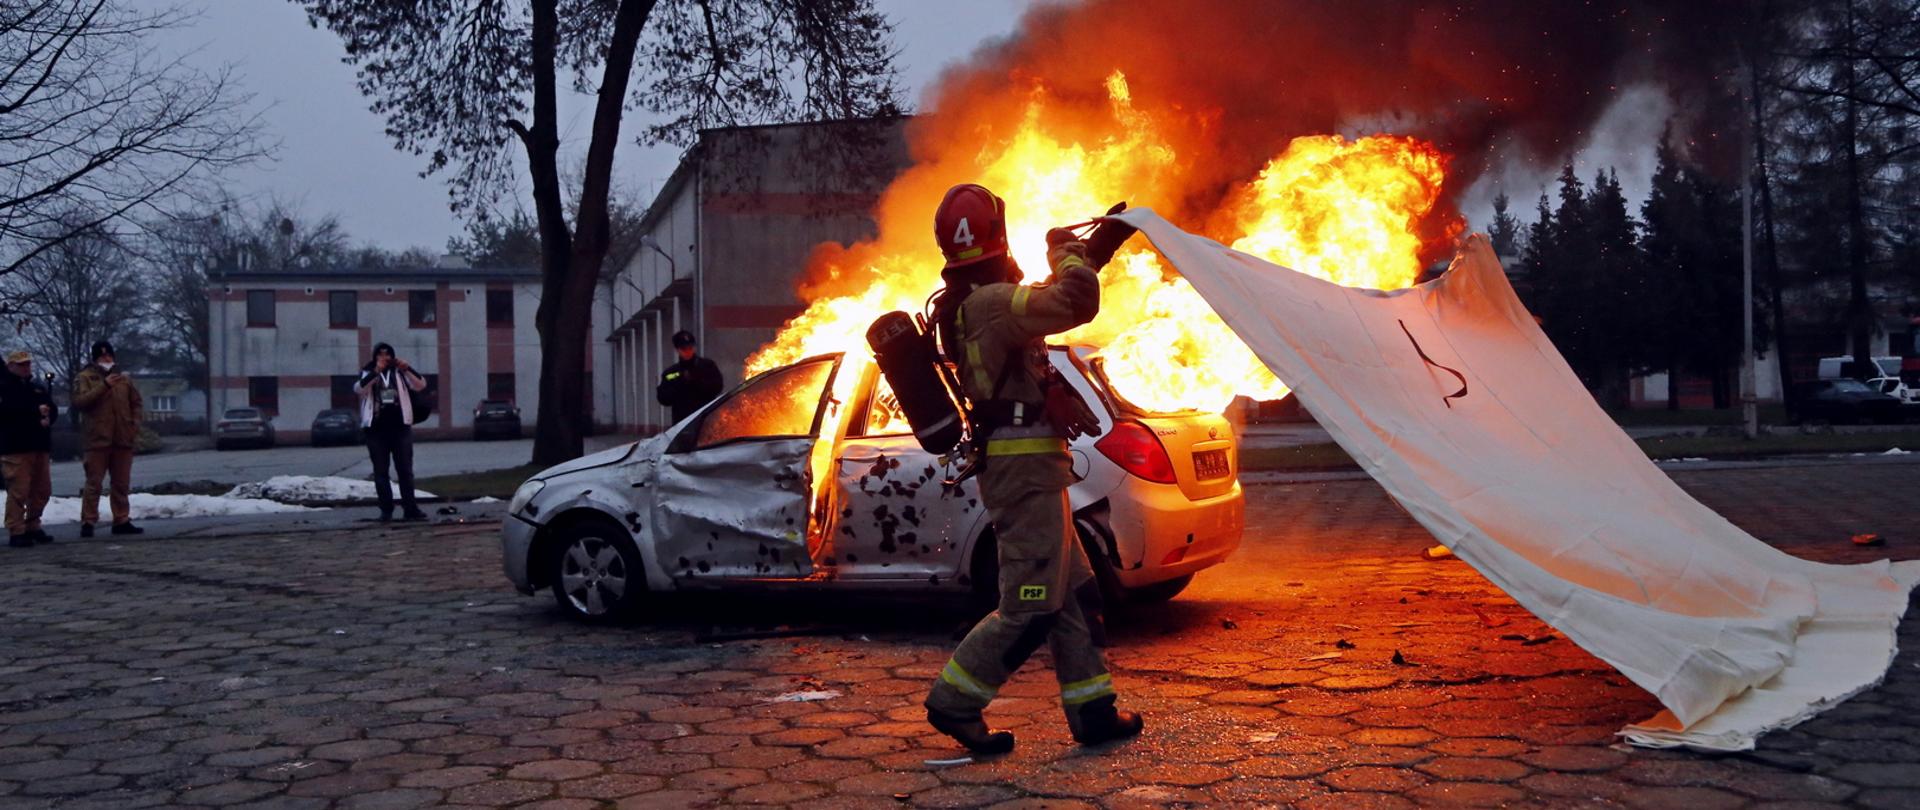 Poligon CS PSP, widoczny płonący wrak samochodu osobowego do którego zbliża się dwóch strażaków trzymając rozciągniętą płachtę